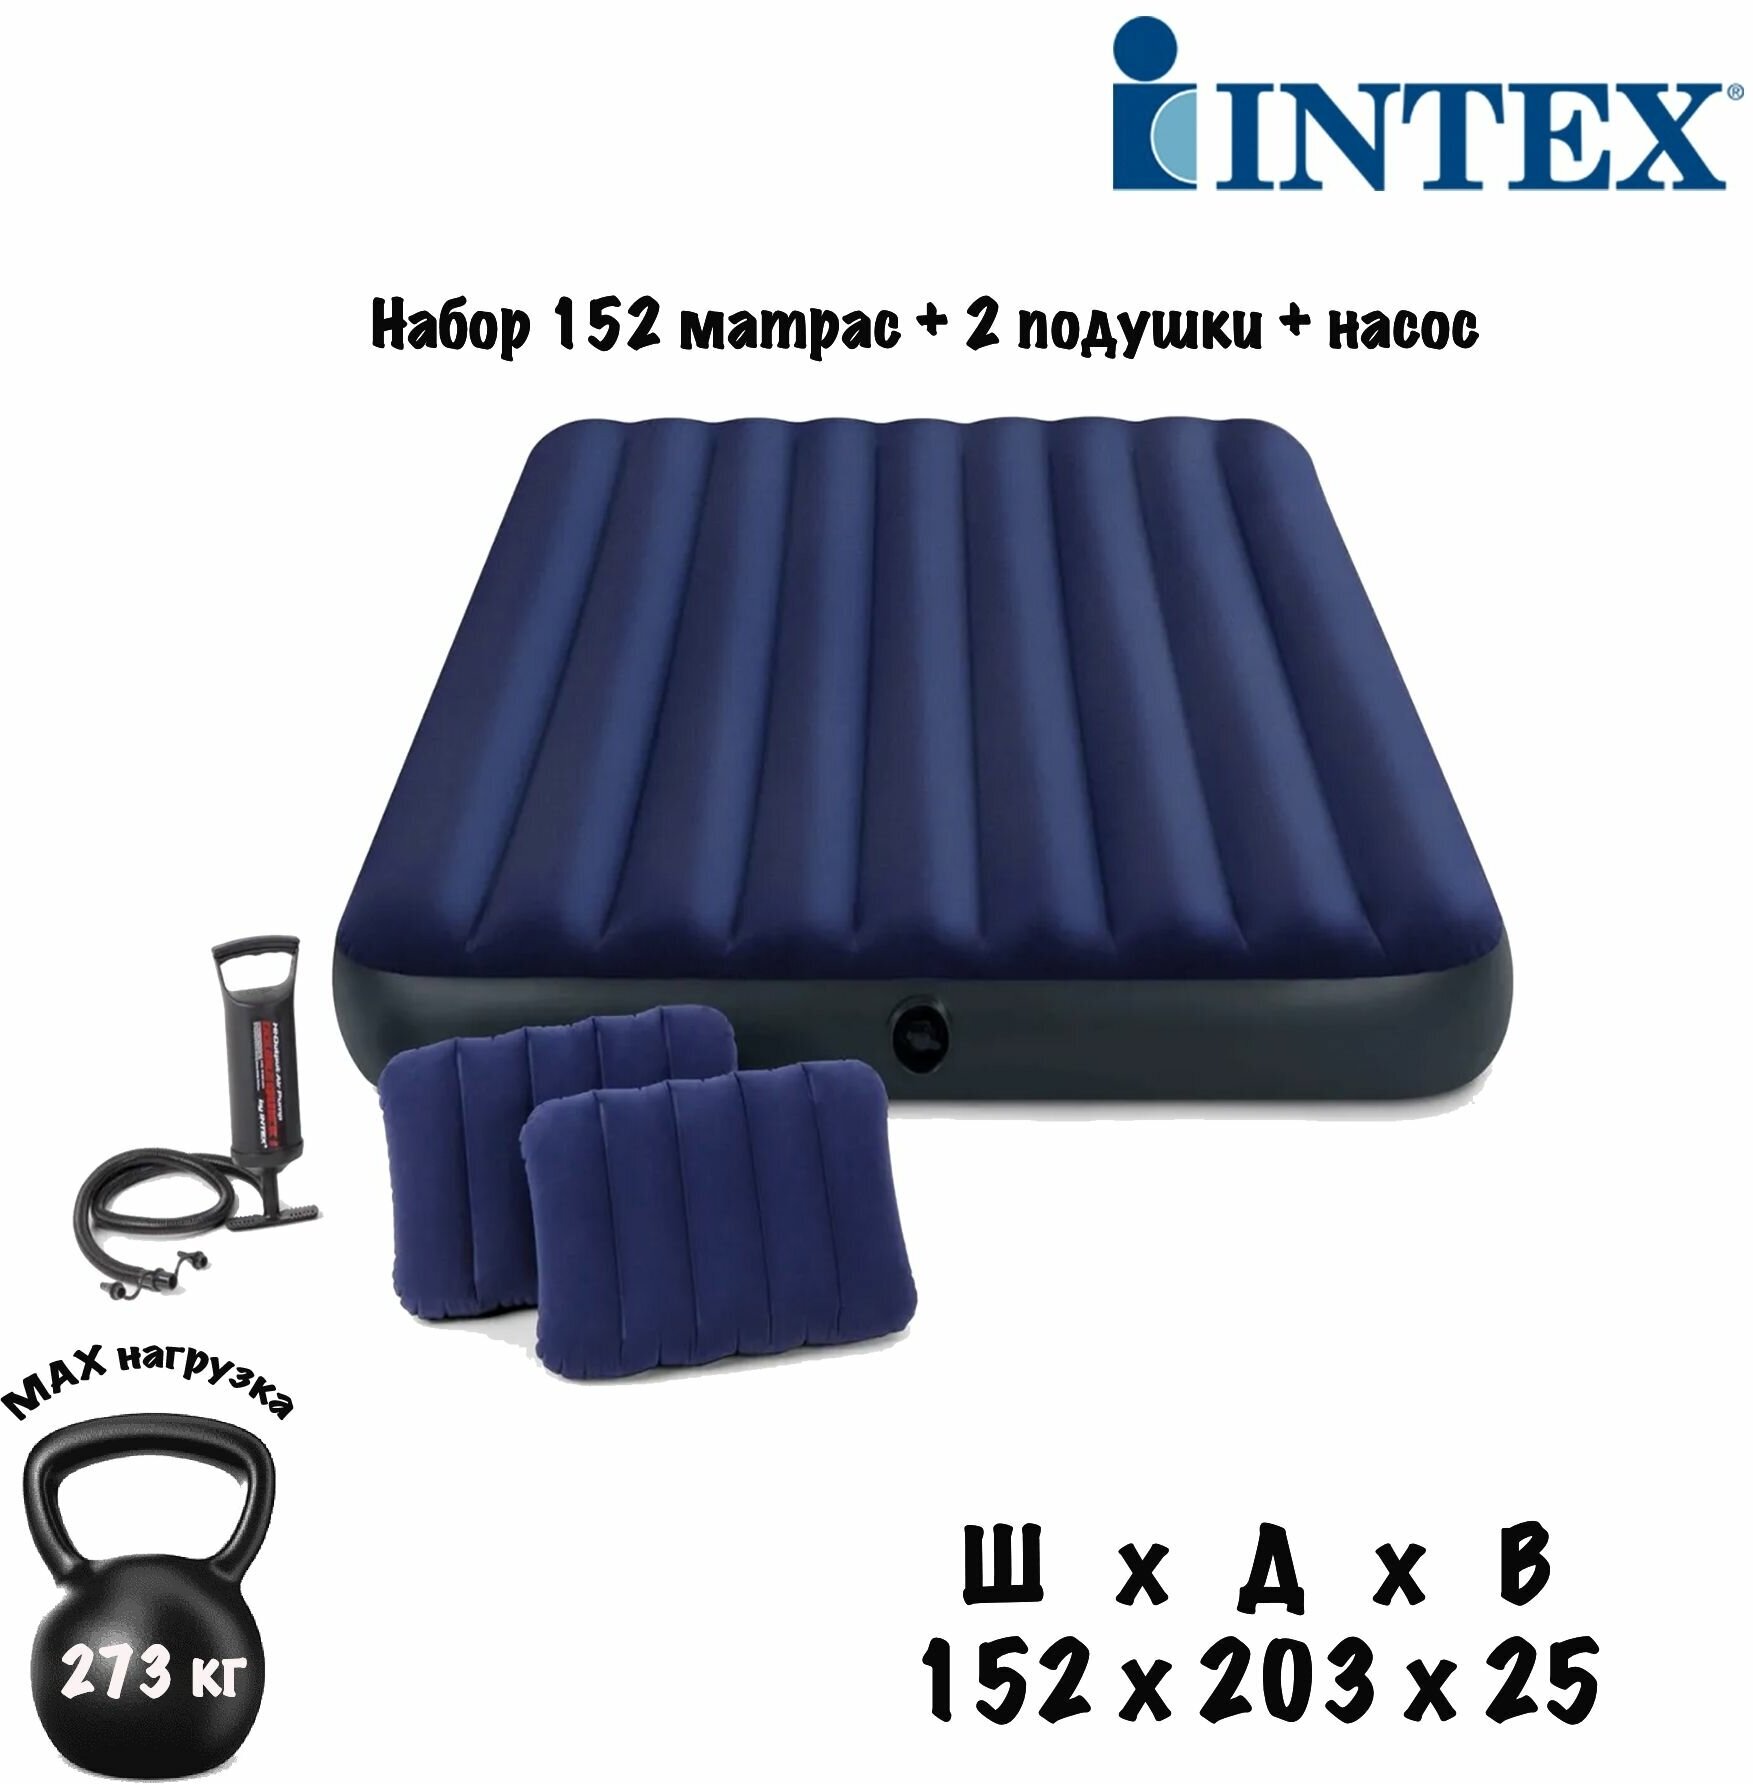 Матрас надувной двуспальный синий 152 х 203 х 25 см. INTEX насос ручной 2 подушки